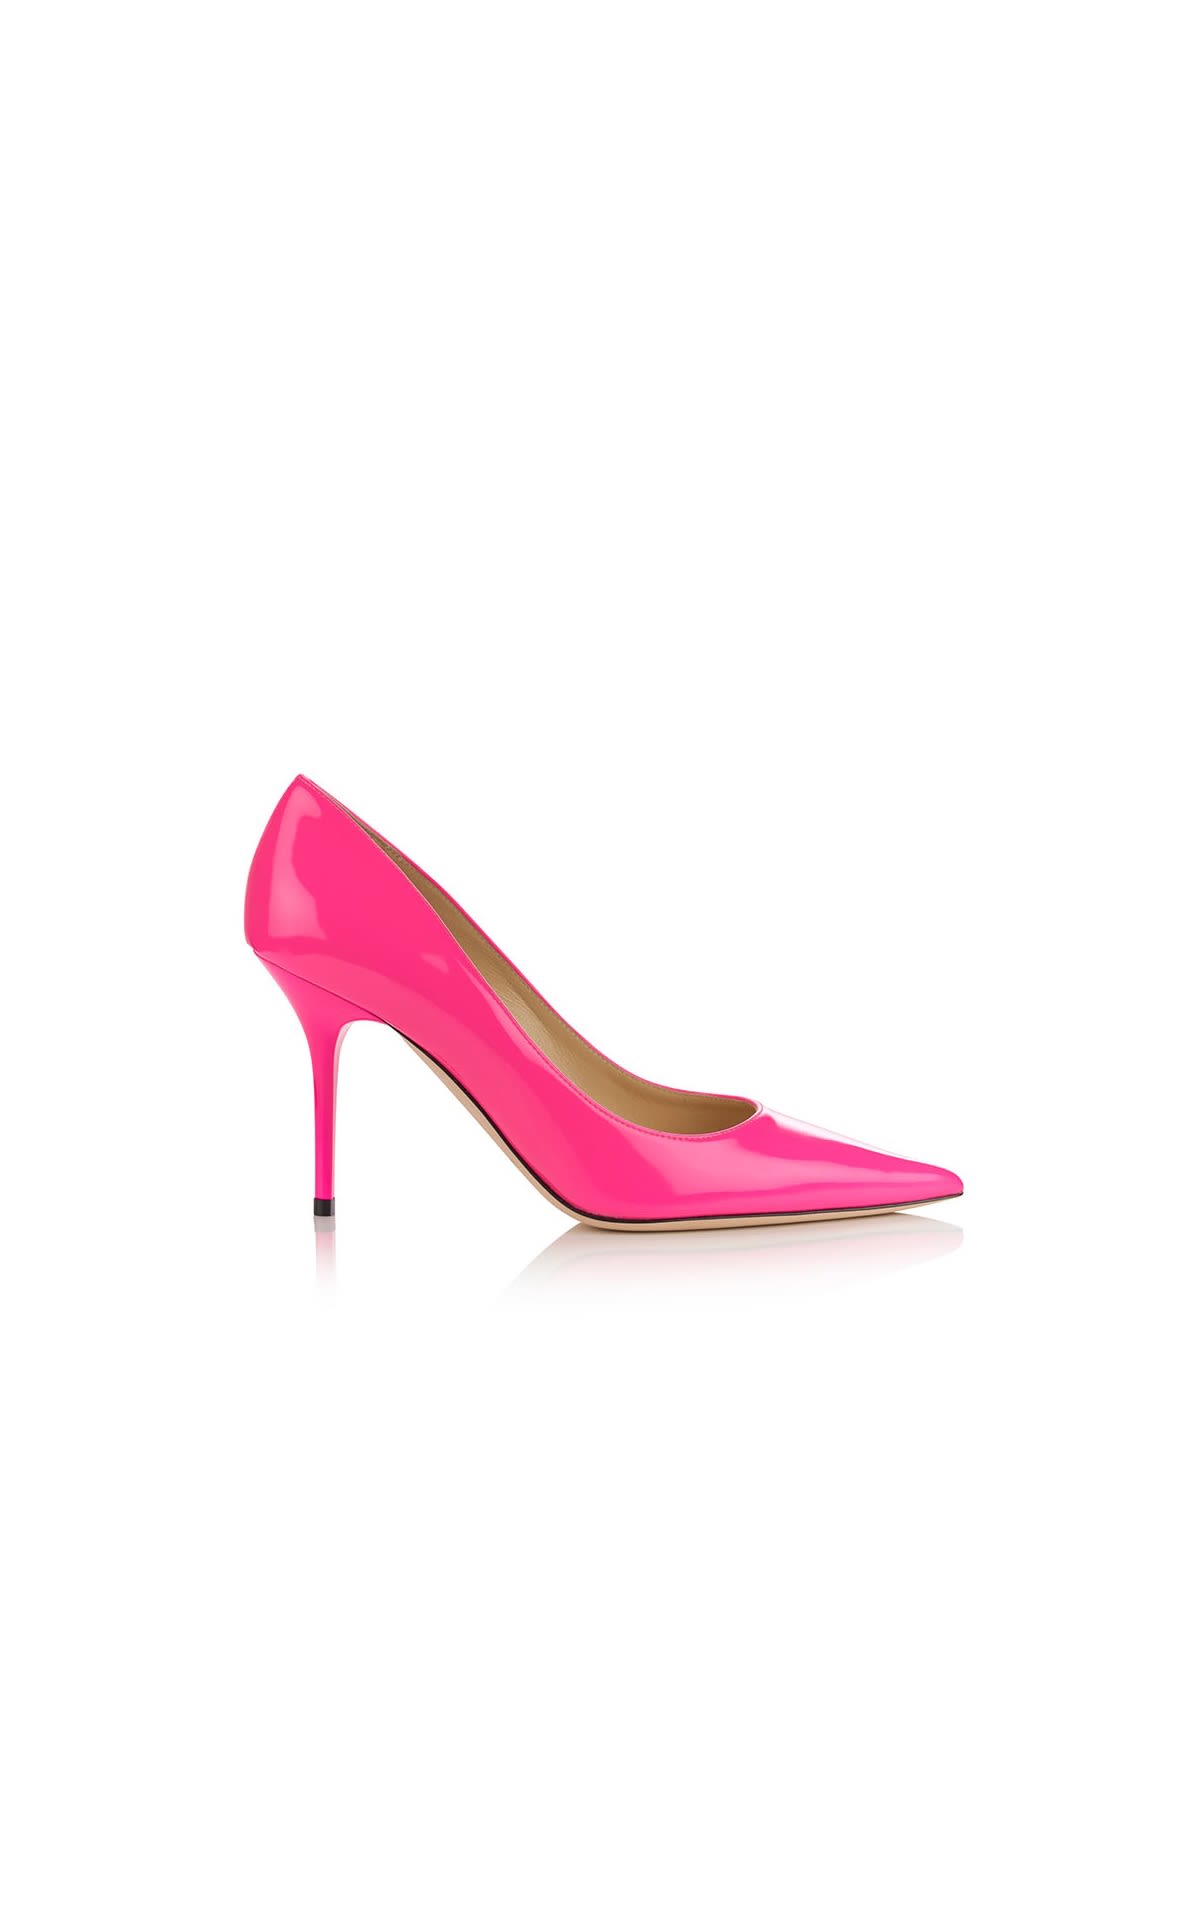 Neon pink stiletto heel shoe Jimmy choo